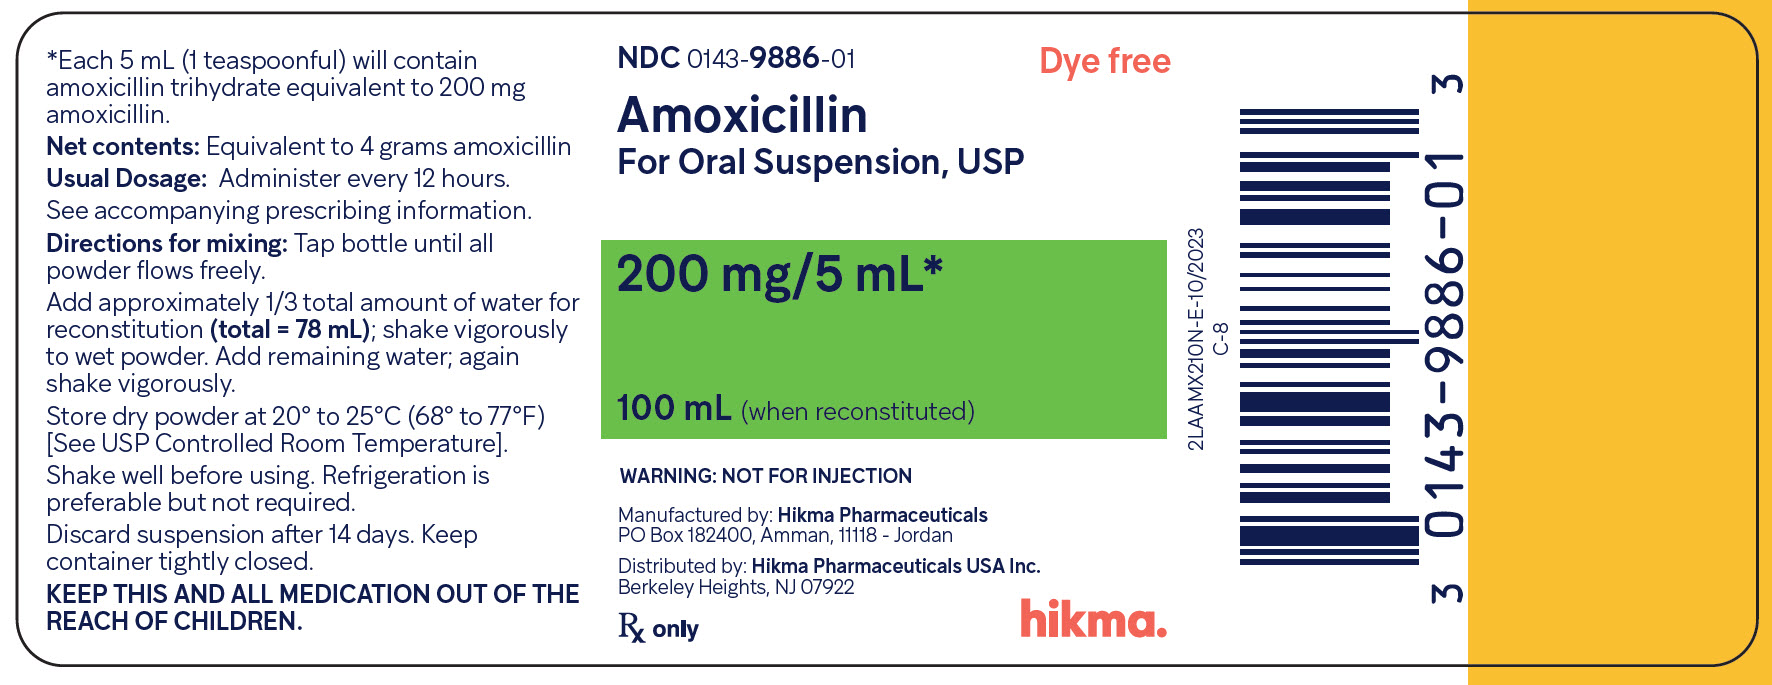 Amoxicillin OS 200 mg/5 mL (100 mL) bottle label image